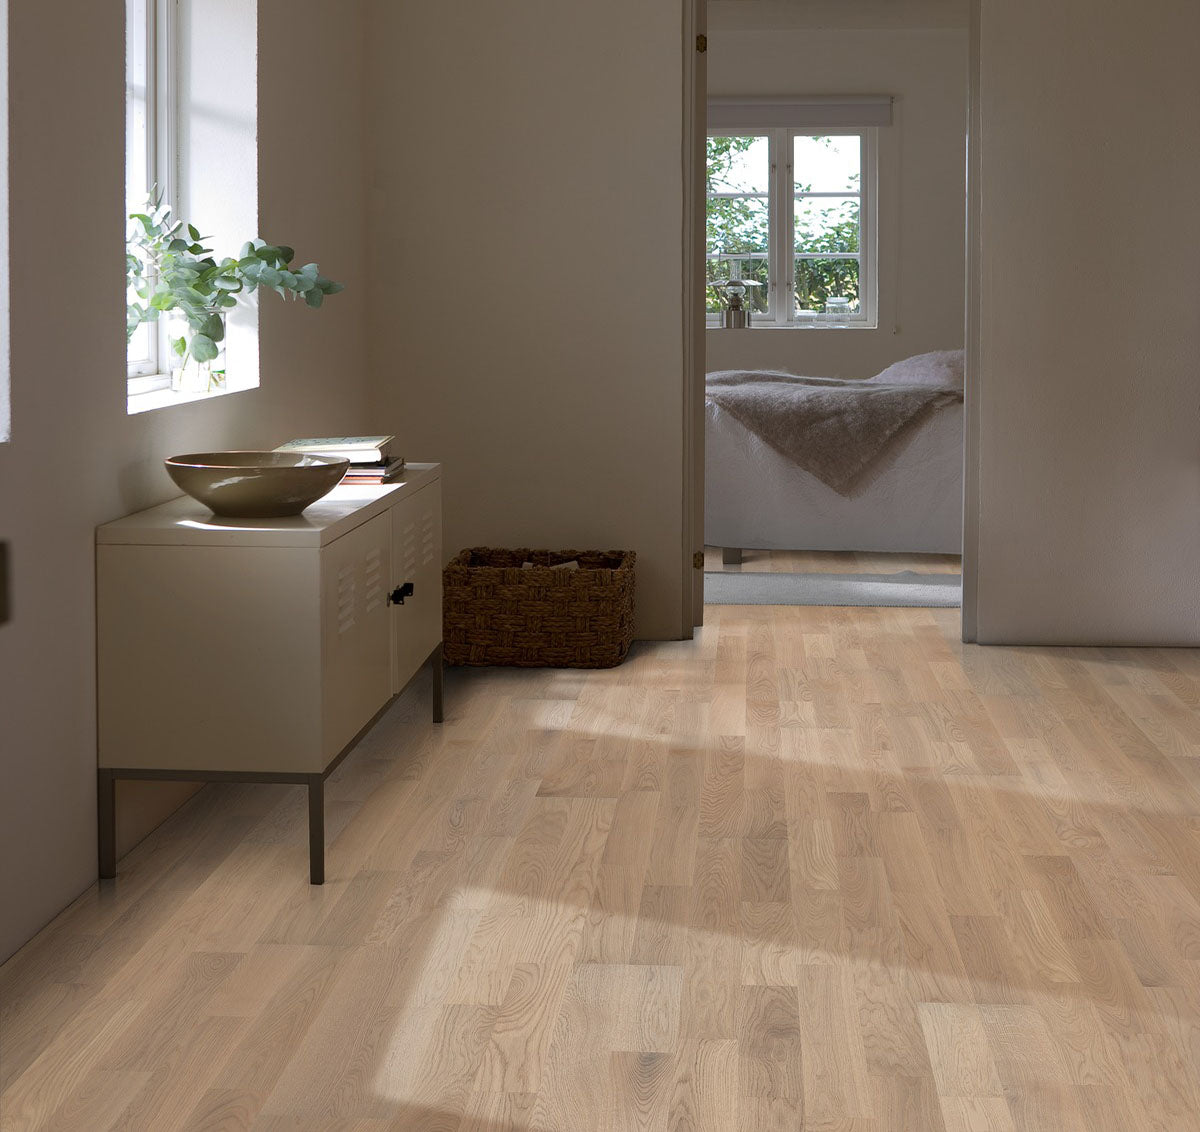 Engineered hardwood flooring from Sweden.